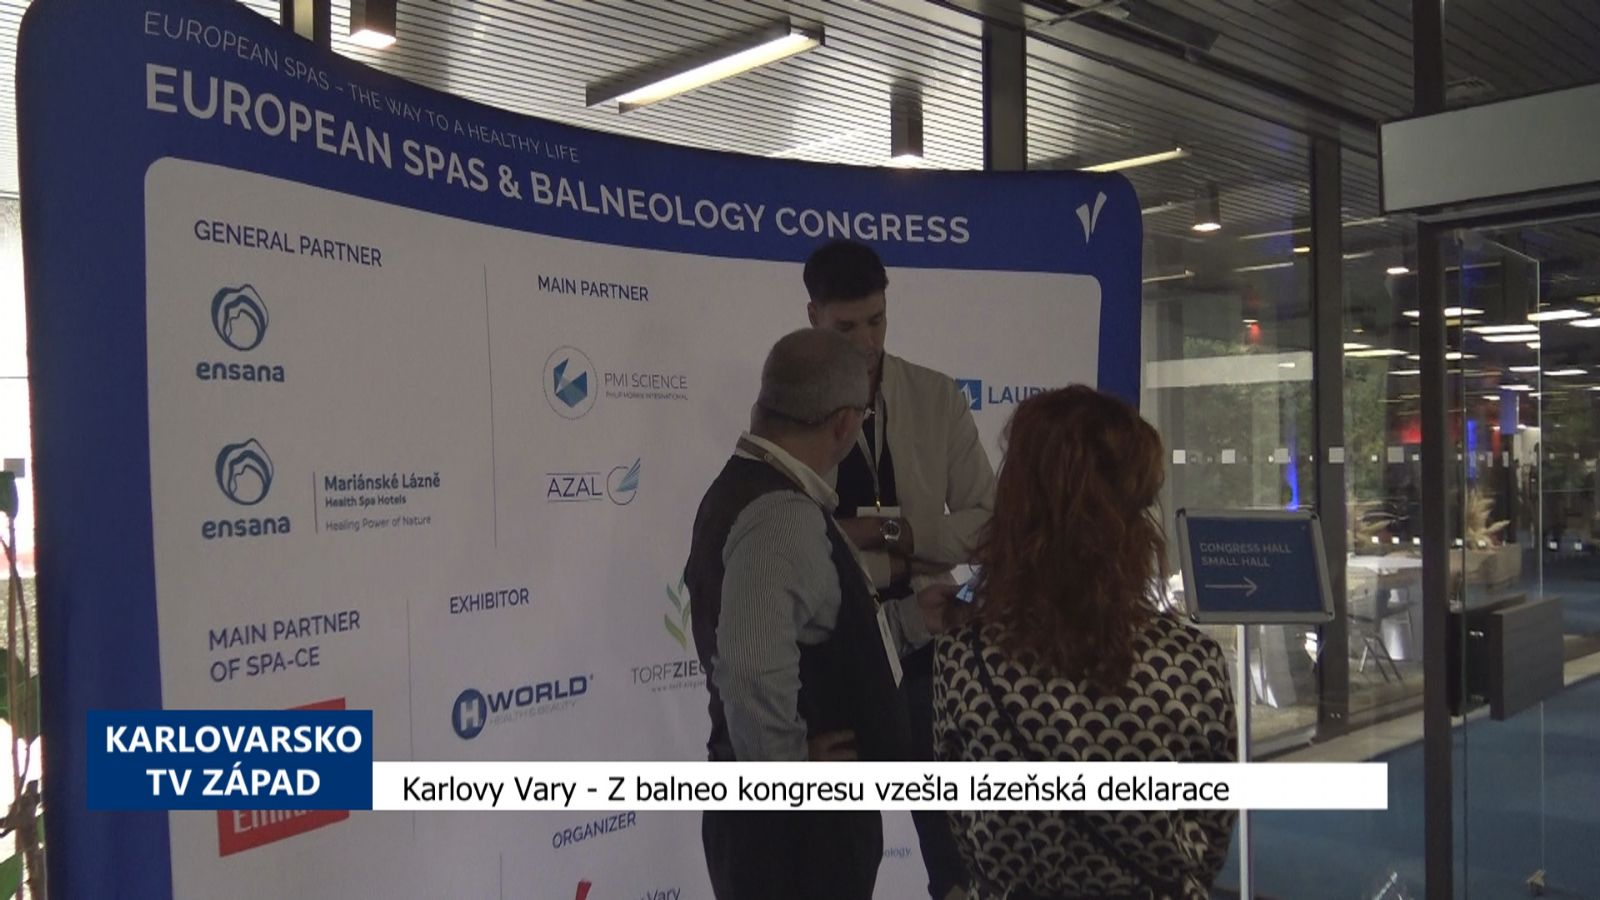 Karlovy Vary: Z balneo kongresu vzešla lázeňská deklarace (TV Západ)